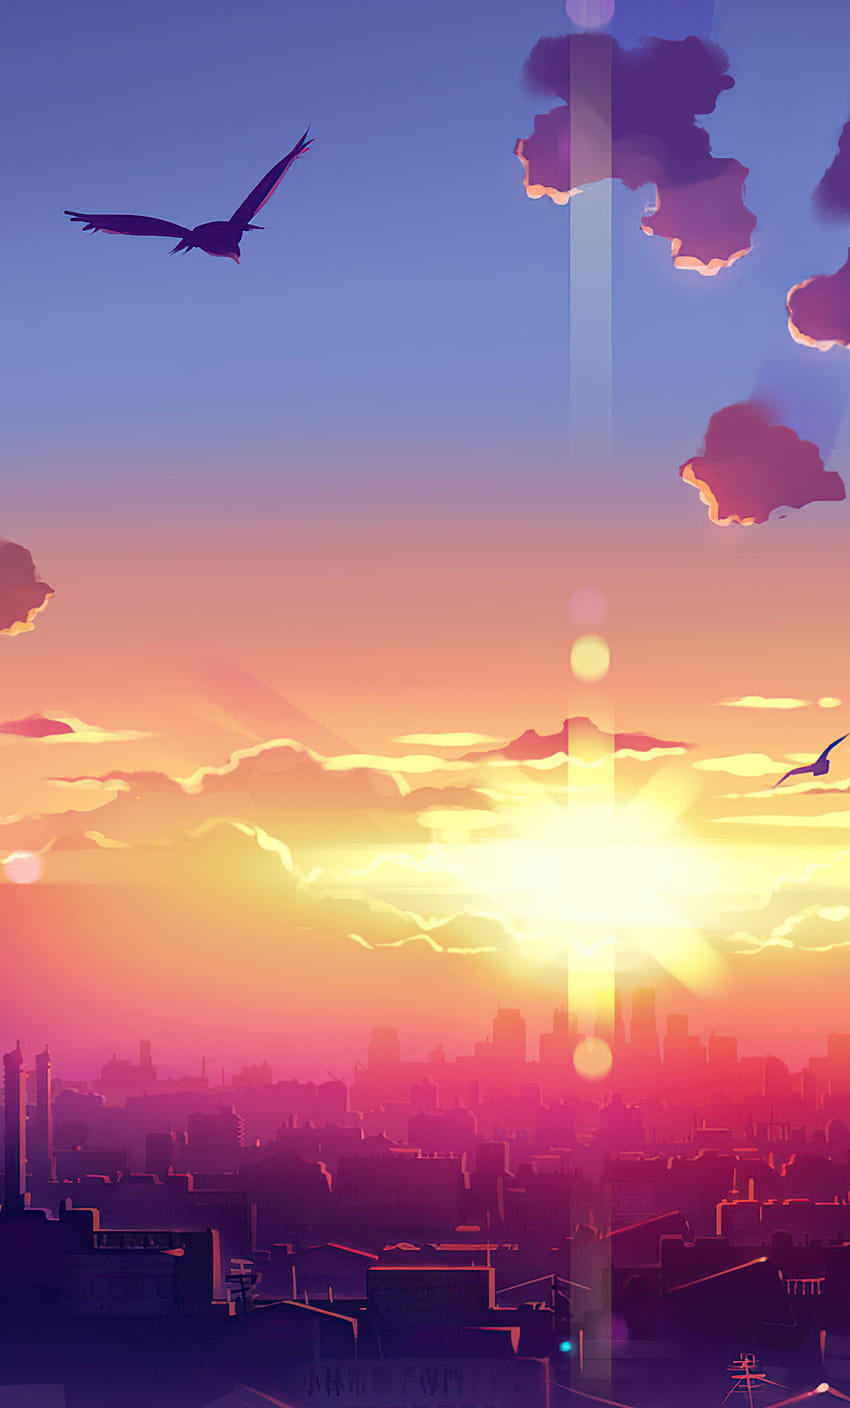 Futuristic Anime Cityscape At Sunset by monorisu